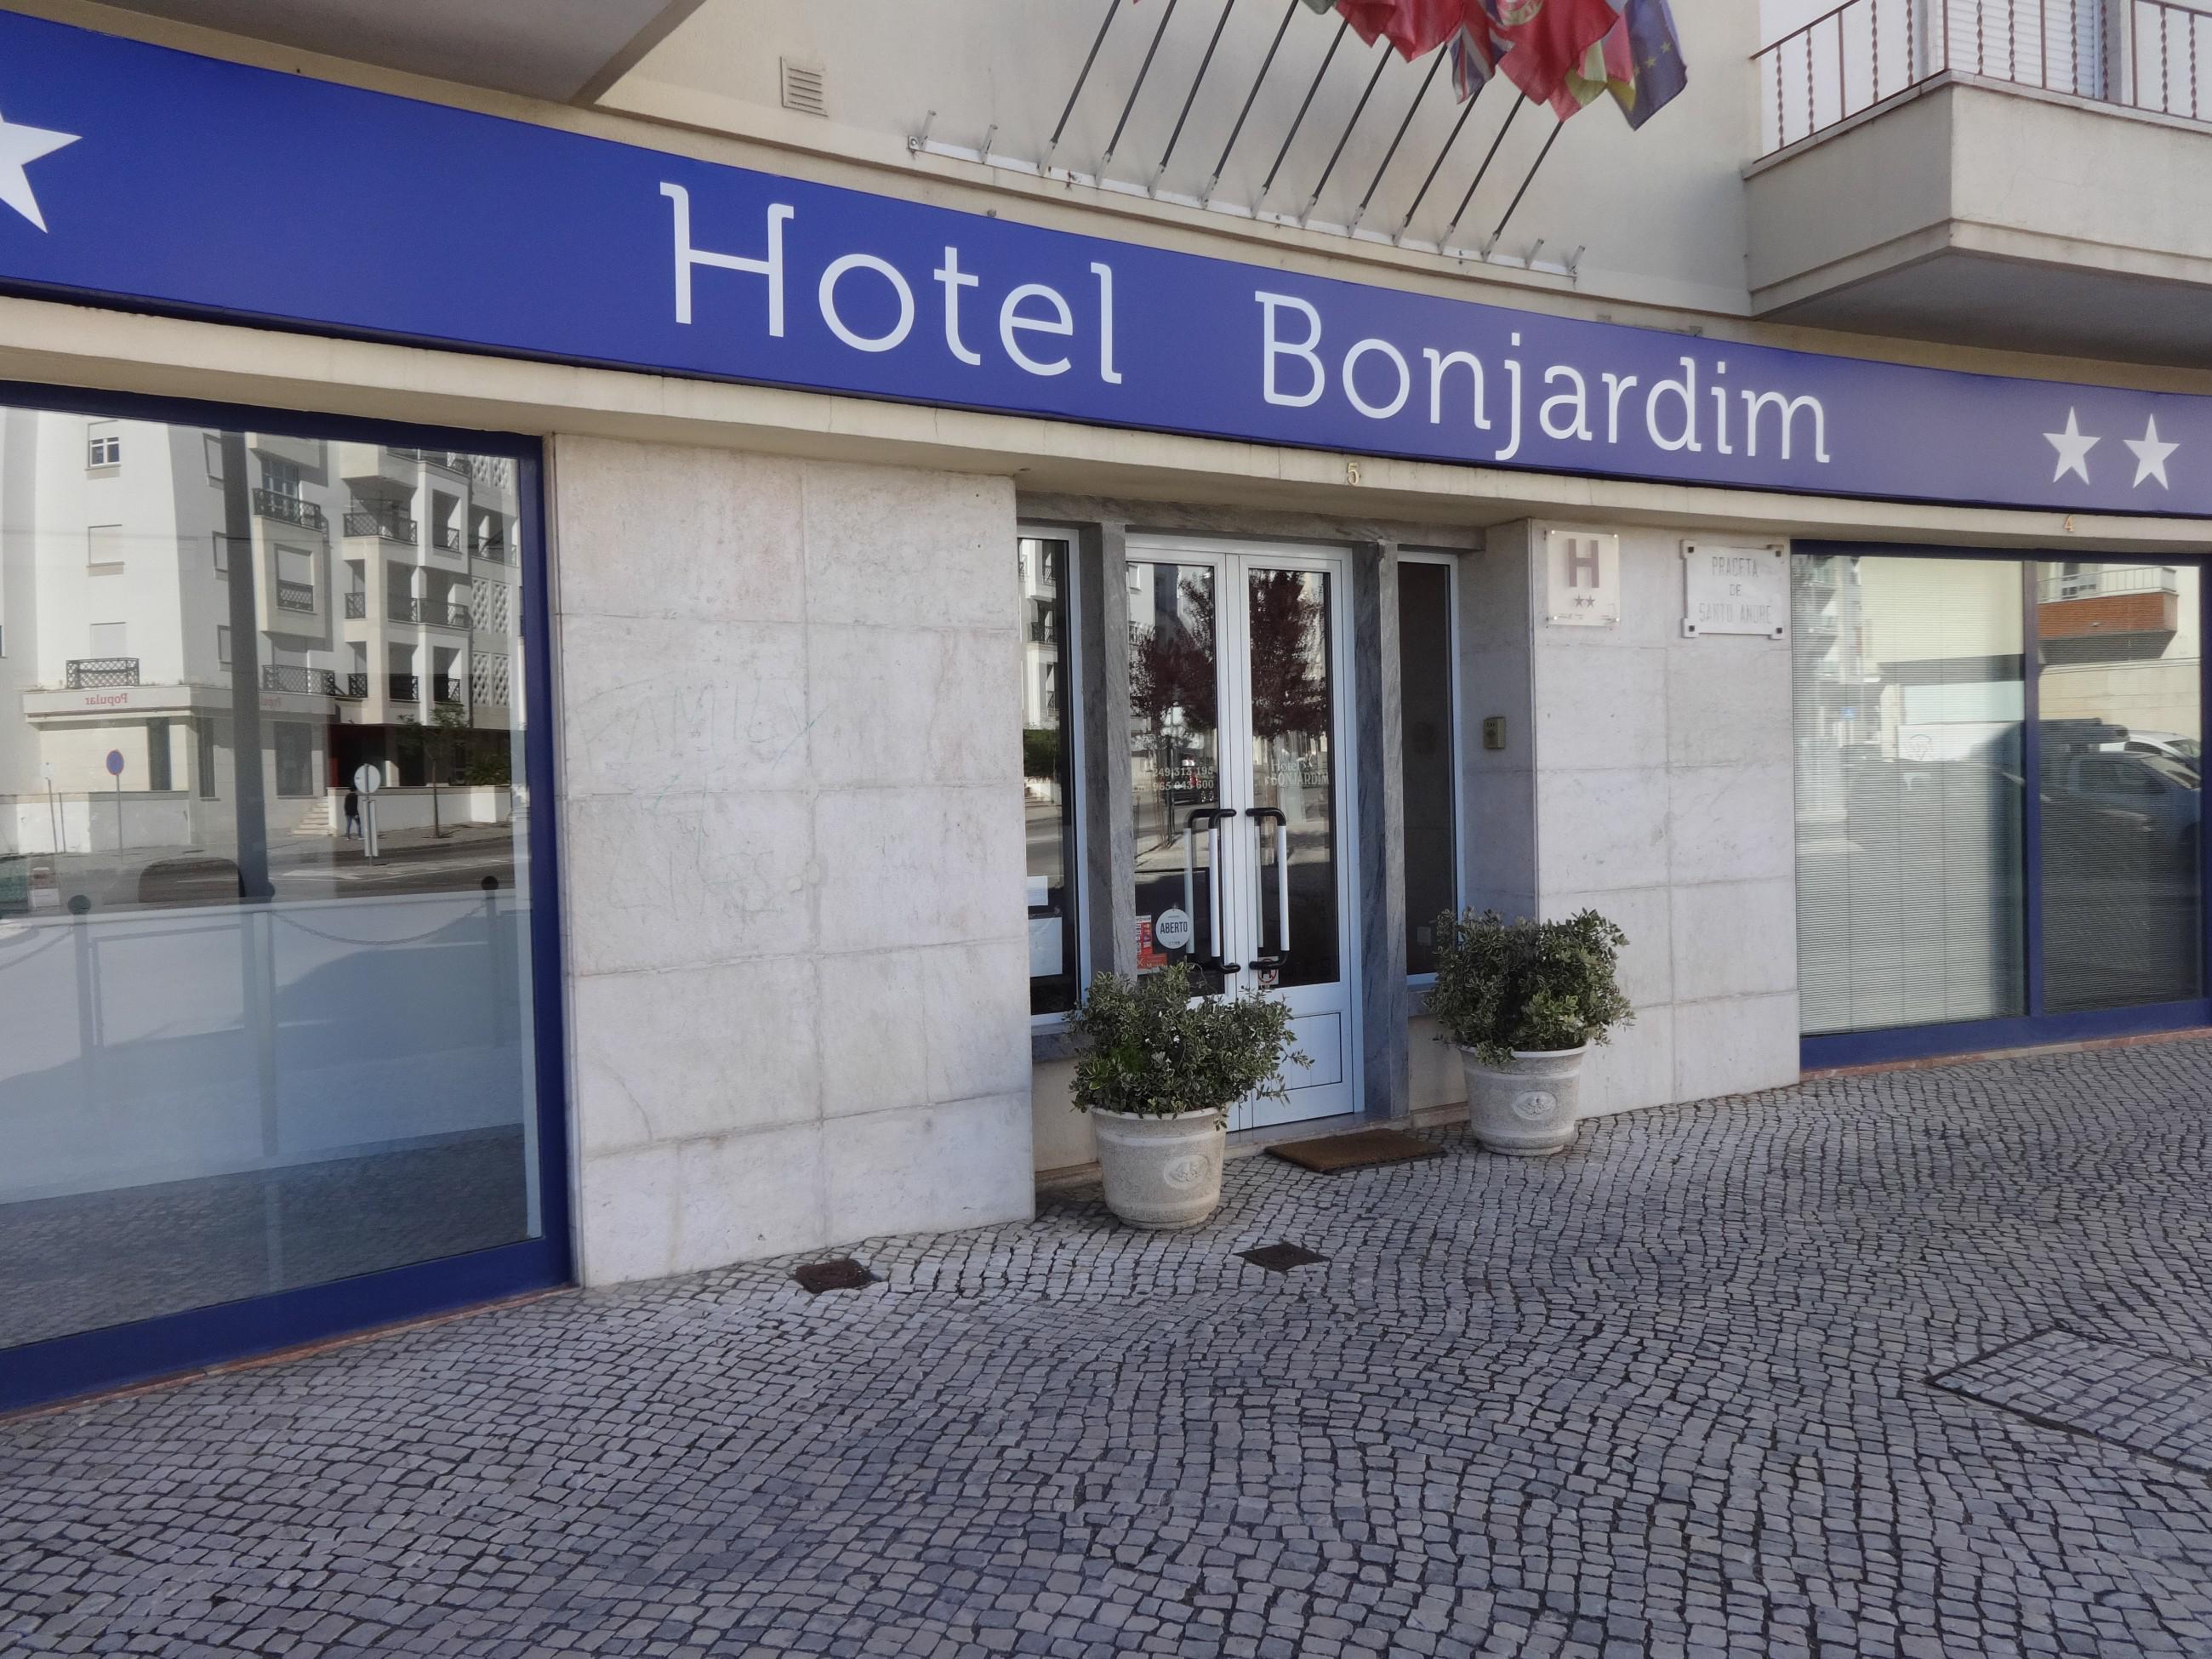 Fachada - O Hotel Bonjardim situa-se em Tomar, a menos de 20 minutos a pé do Convento de Cristo e a 15 minutos da Estação Ferroviária de Tomar, e dispõe de excelentes alojamentos com acesso Wi-Fi gratuito.